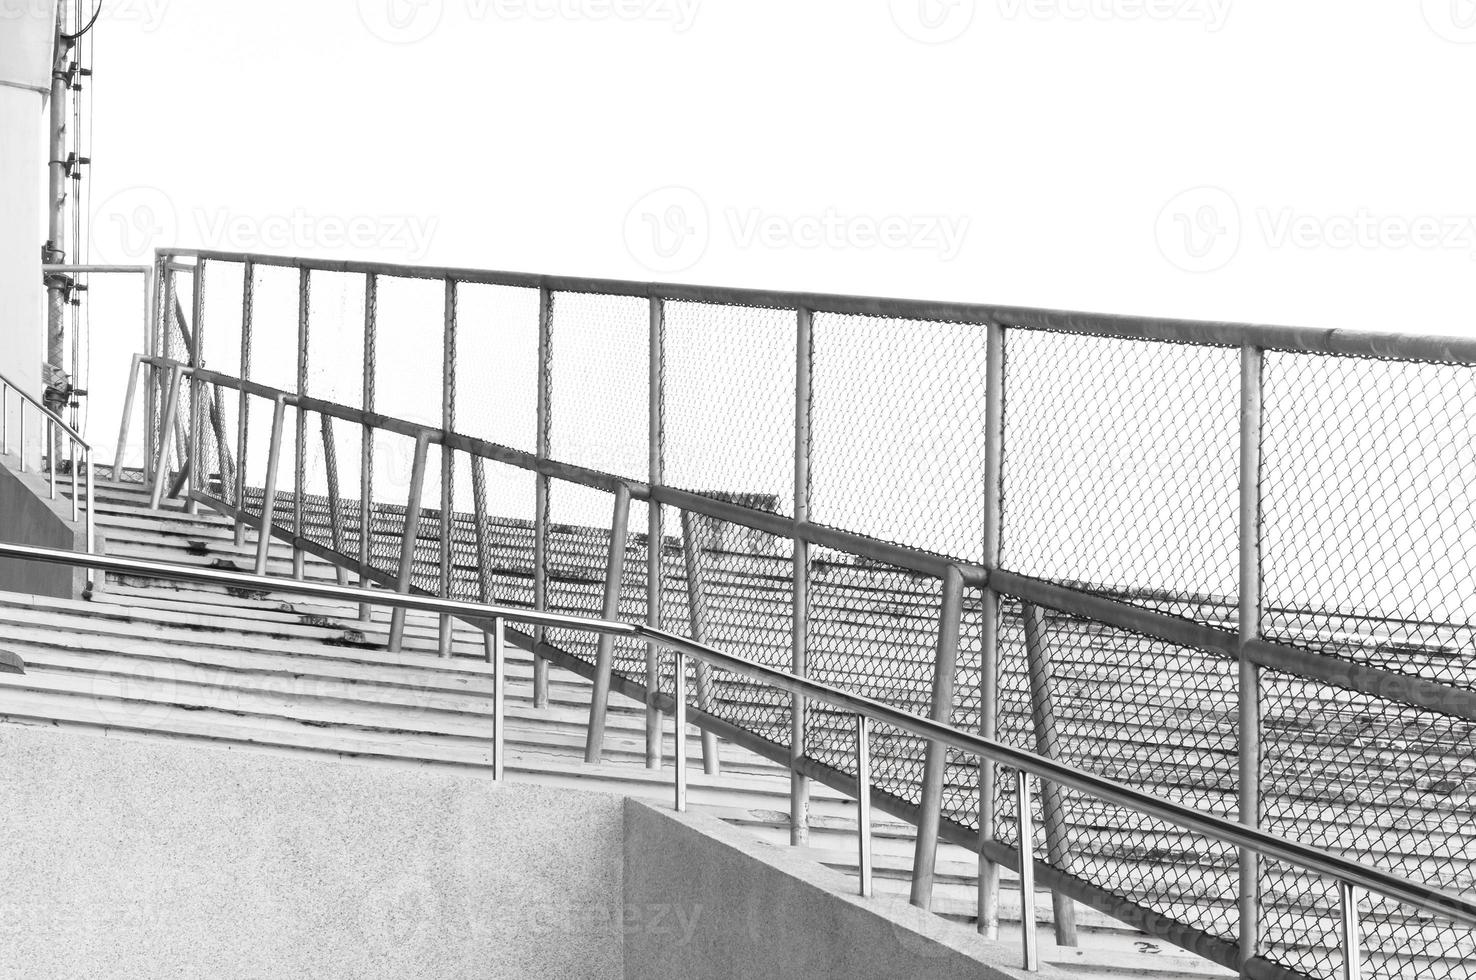 metall staket del av en metall rutnät staket på dela stadion foto